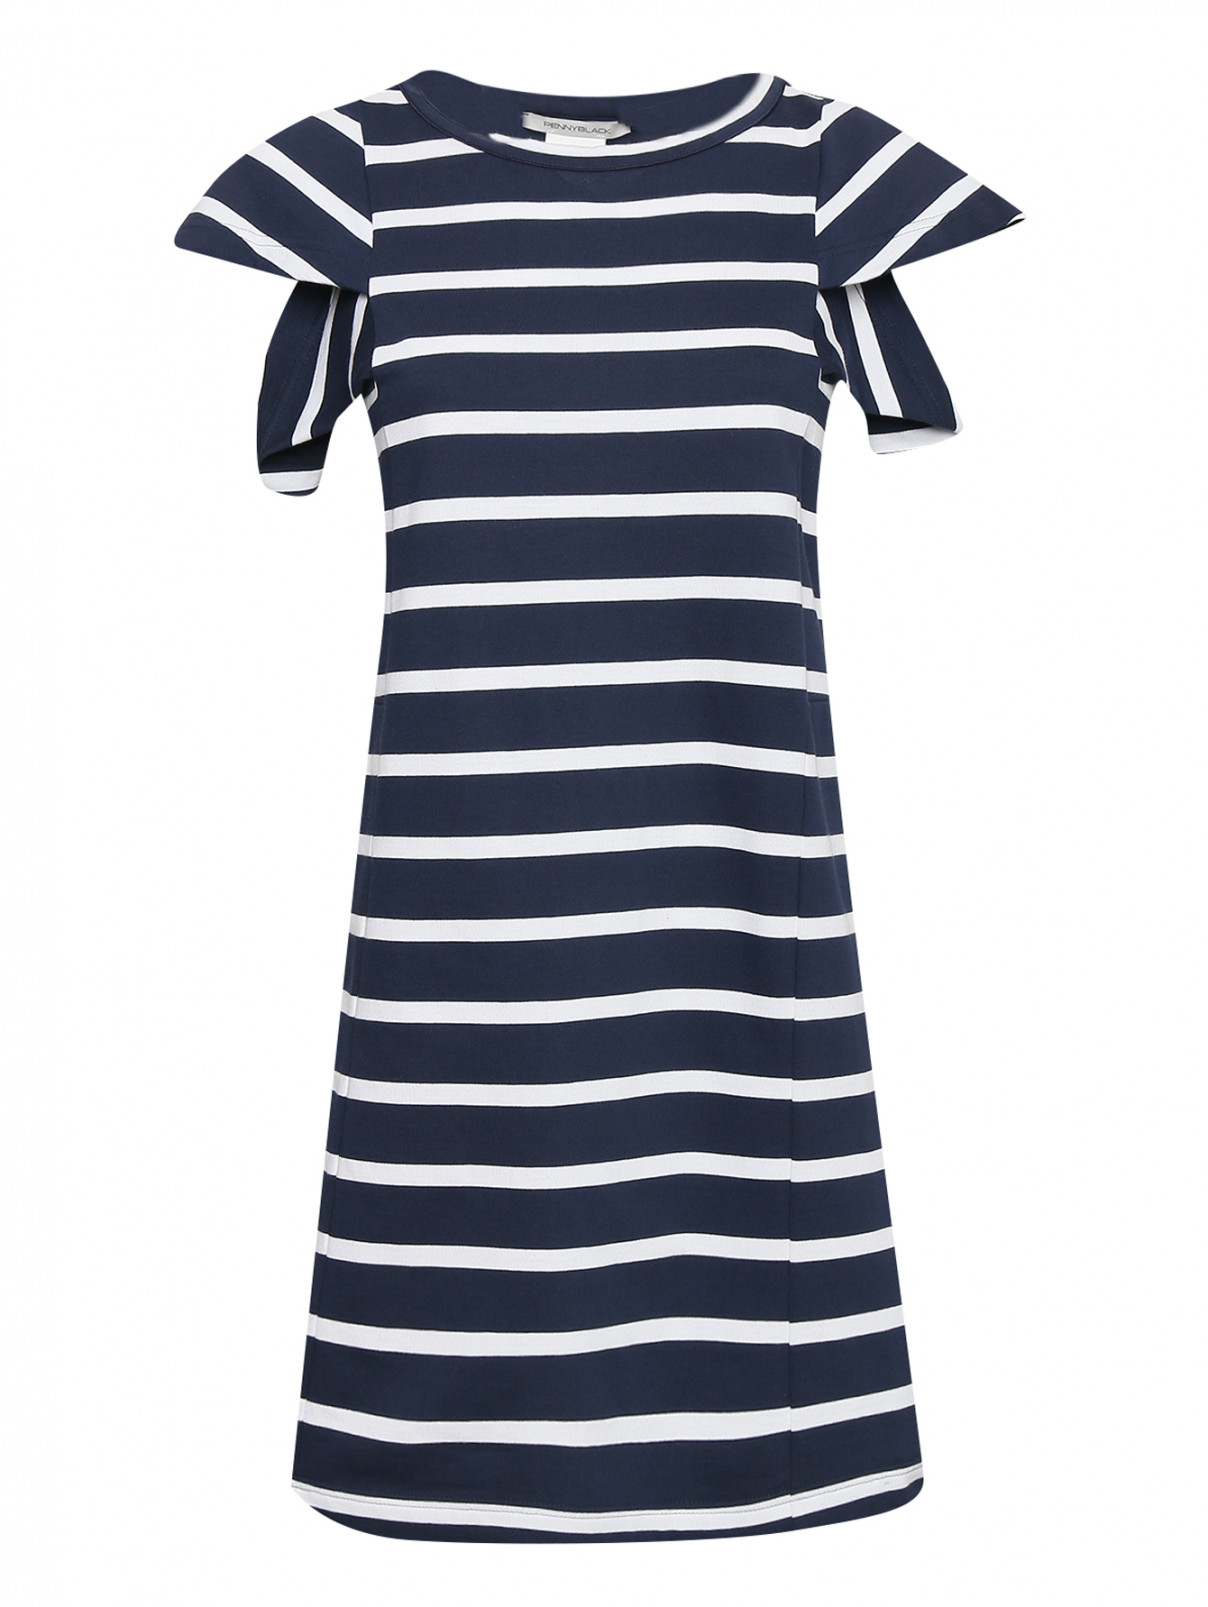 Трикотажное платье из хлопка с узором полоска PennyBlack  –  Общий вид  – Цвет:  Синий